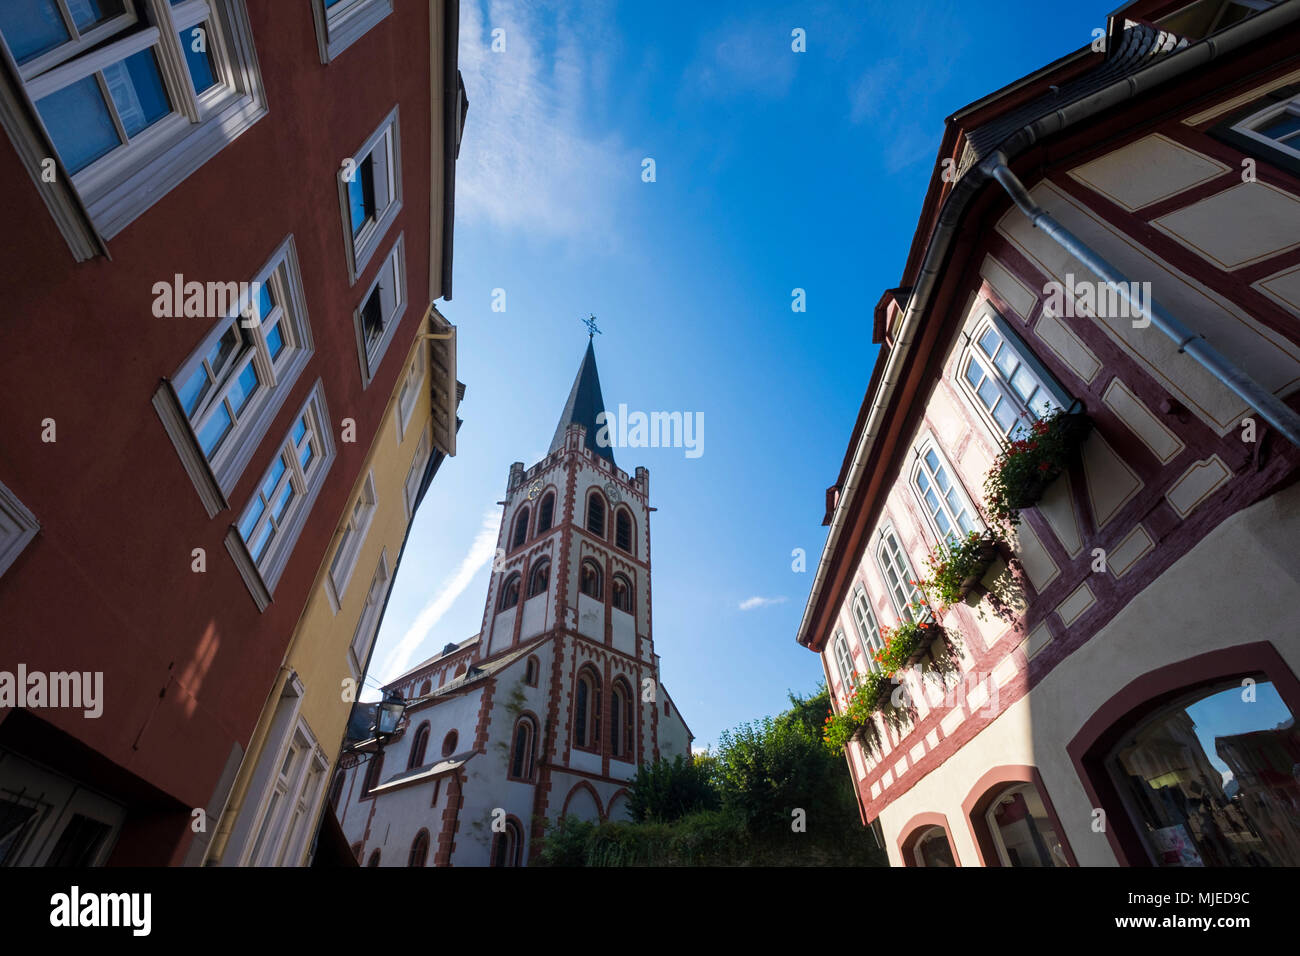 Vieille ville de Bacharach, à colombages, Patrimoine Mondial de l'UNESCO, vallée Mittelrheintal, Rhénanie-Palatinat, Allemagne, Europe Banque D'Images